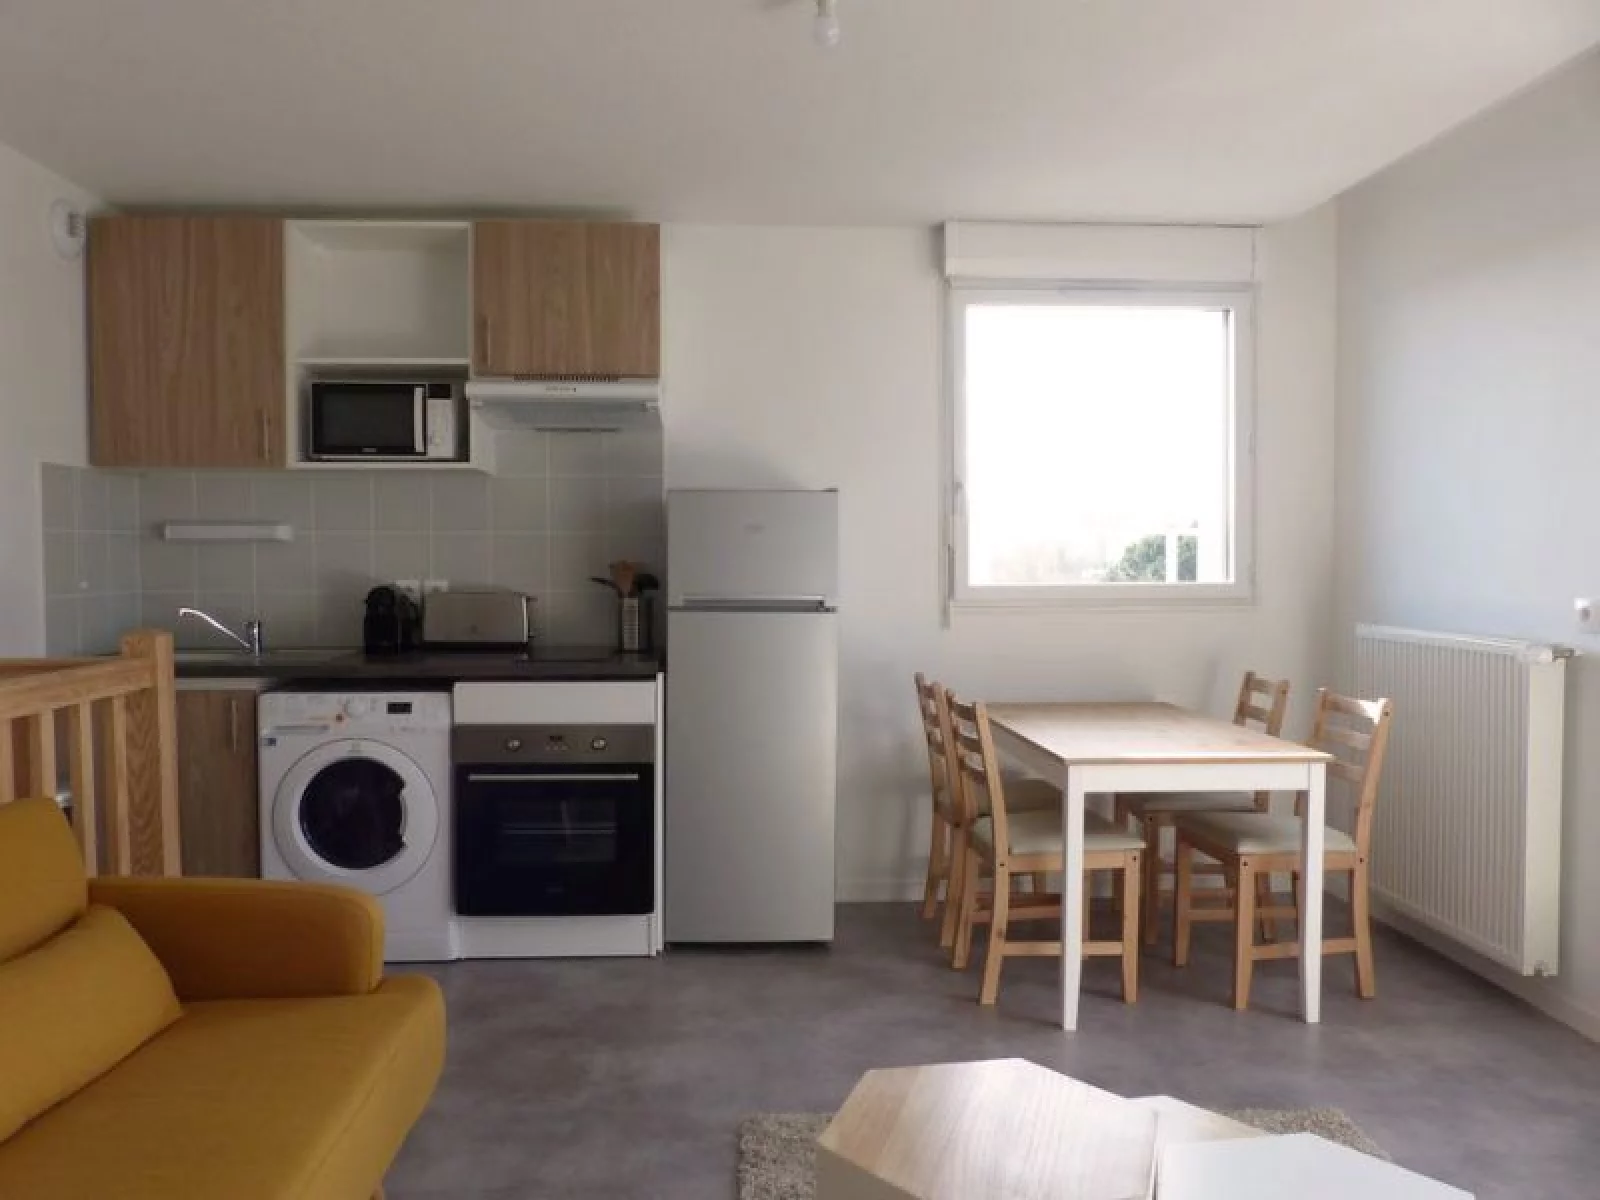 Location appartement meublé duplex 2 pièces 40m² (Bordeaux - St Augustin)